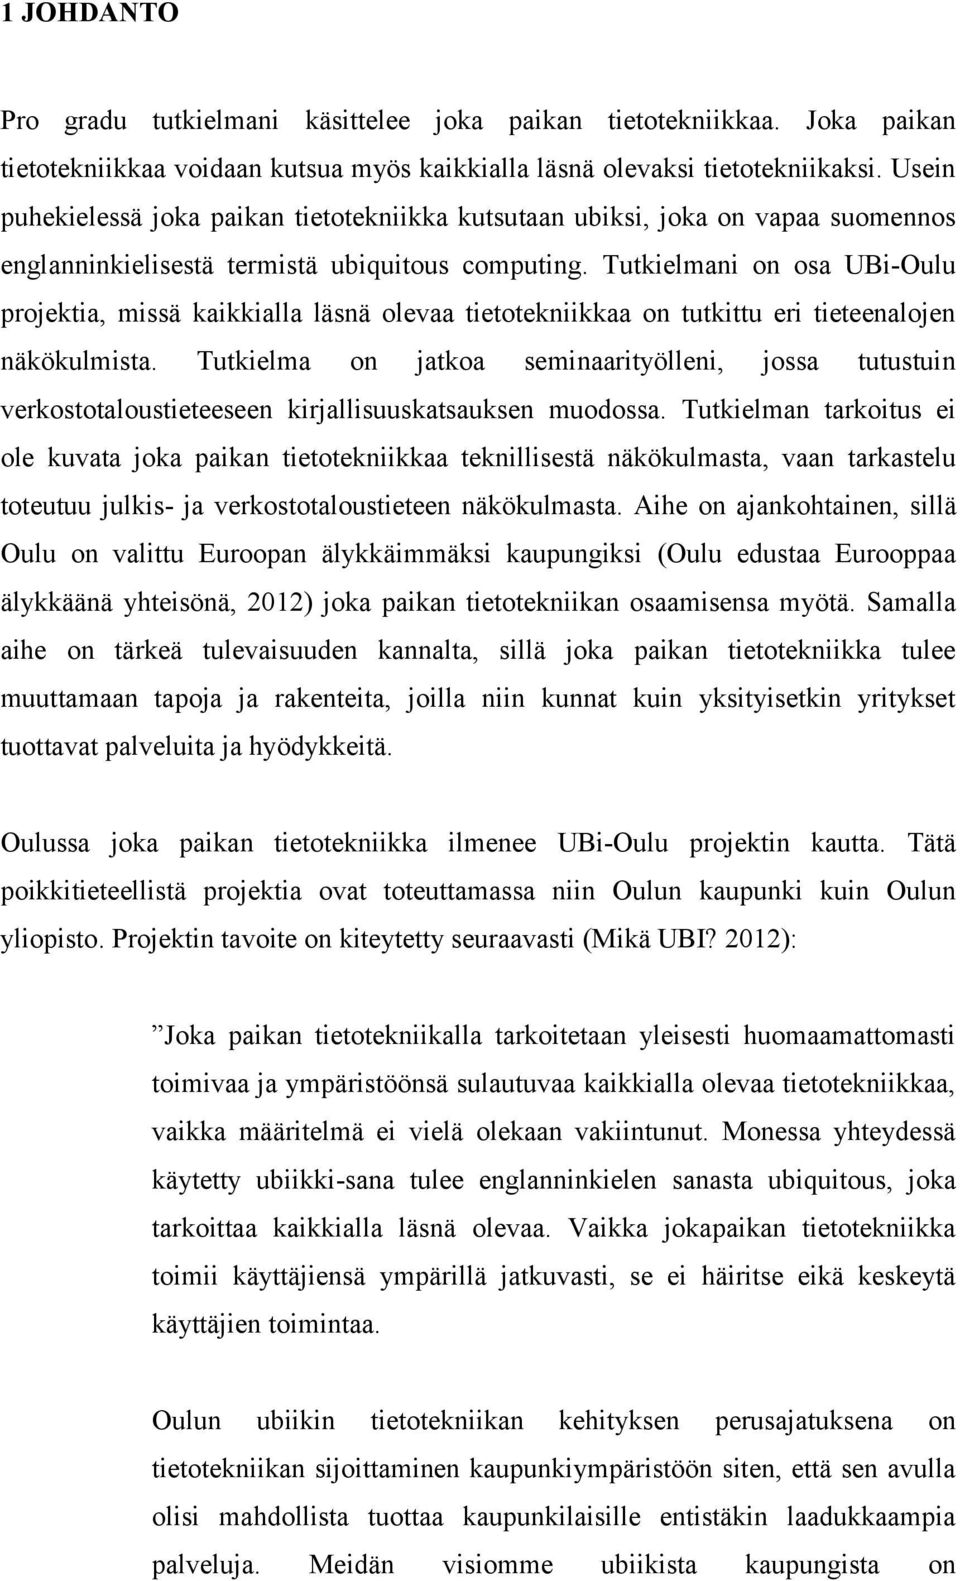 Tukielmani on osa Ui-Oulu projekia, missä kaikkialla läsnä olevaa ieoekniikkaa on ukiu eri ieeenalojen näkökulmisa.